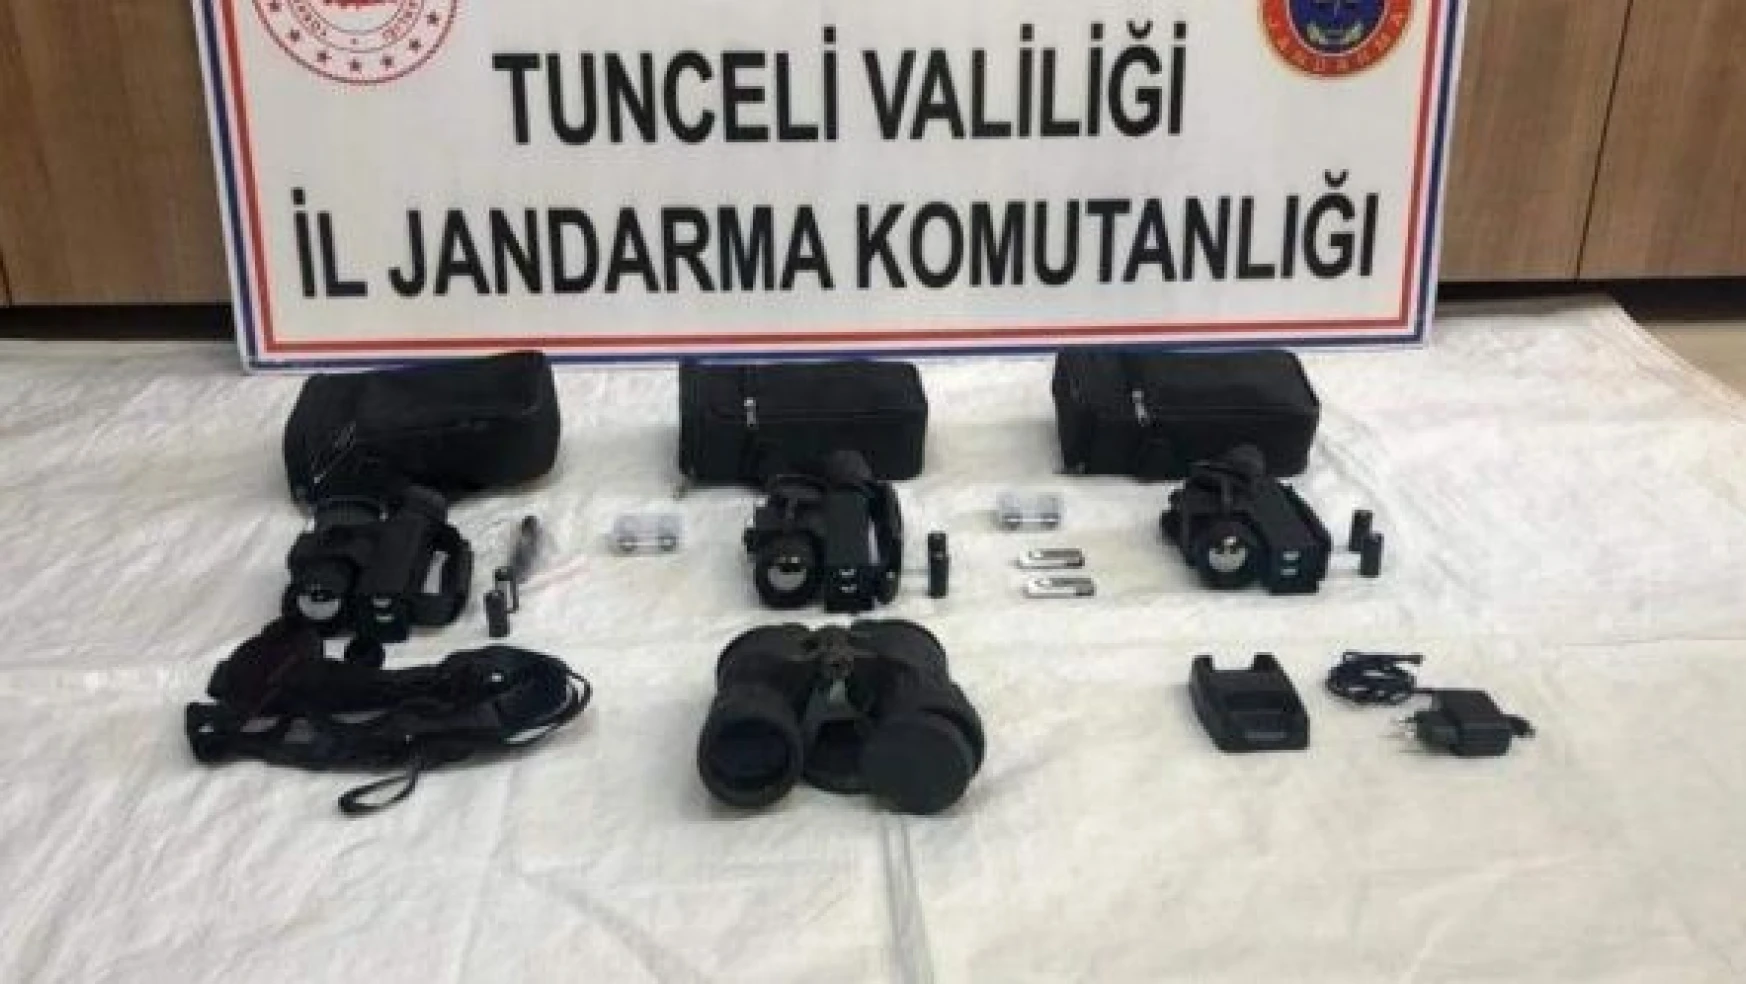 Tunceli'de teröristlerin sığınağı  ele geçirildi!